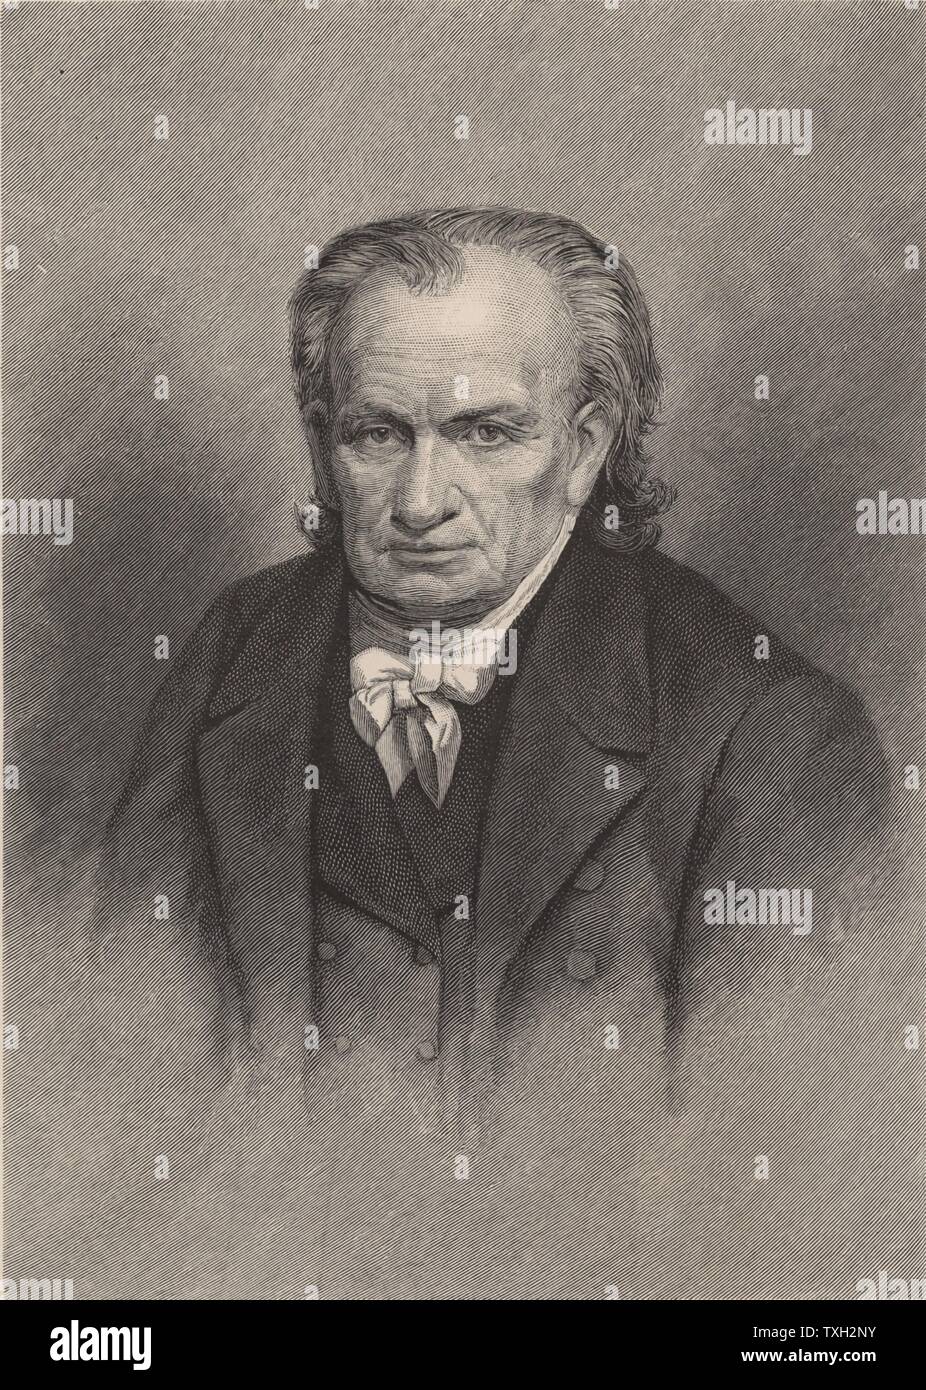 Amos Eaton (1776-1842), botaniste américain, géologue, avocat et conférencière. Gravure, 1896. Chercheur scientifique Banque D'Images